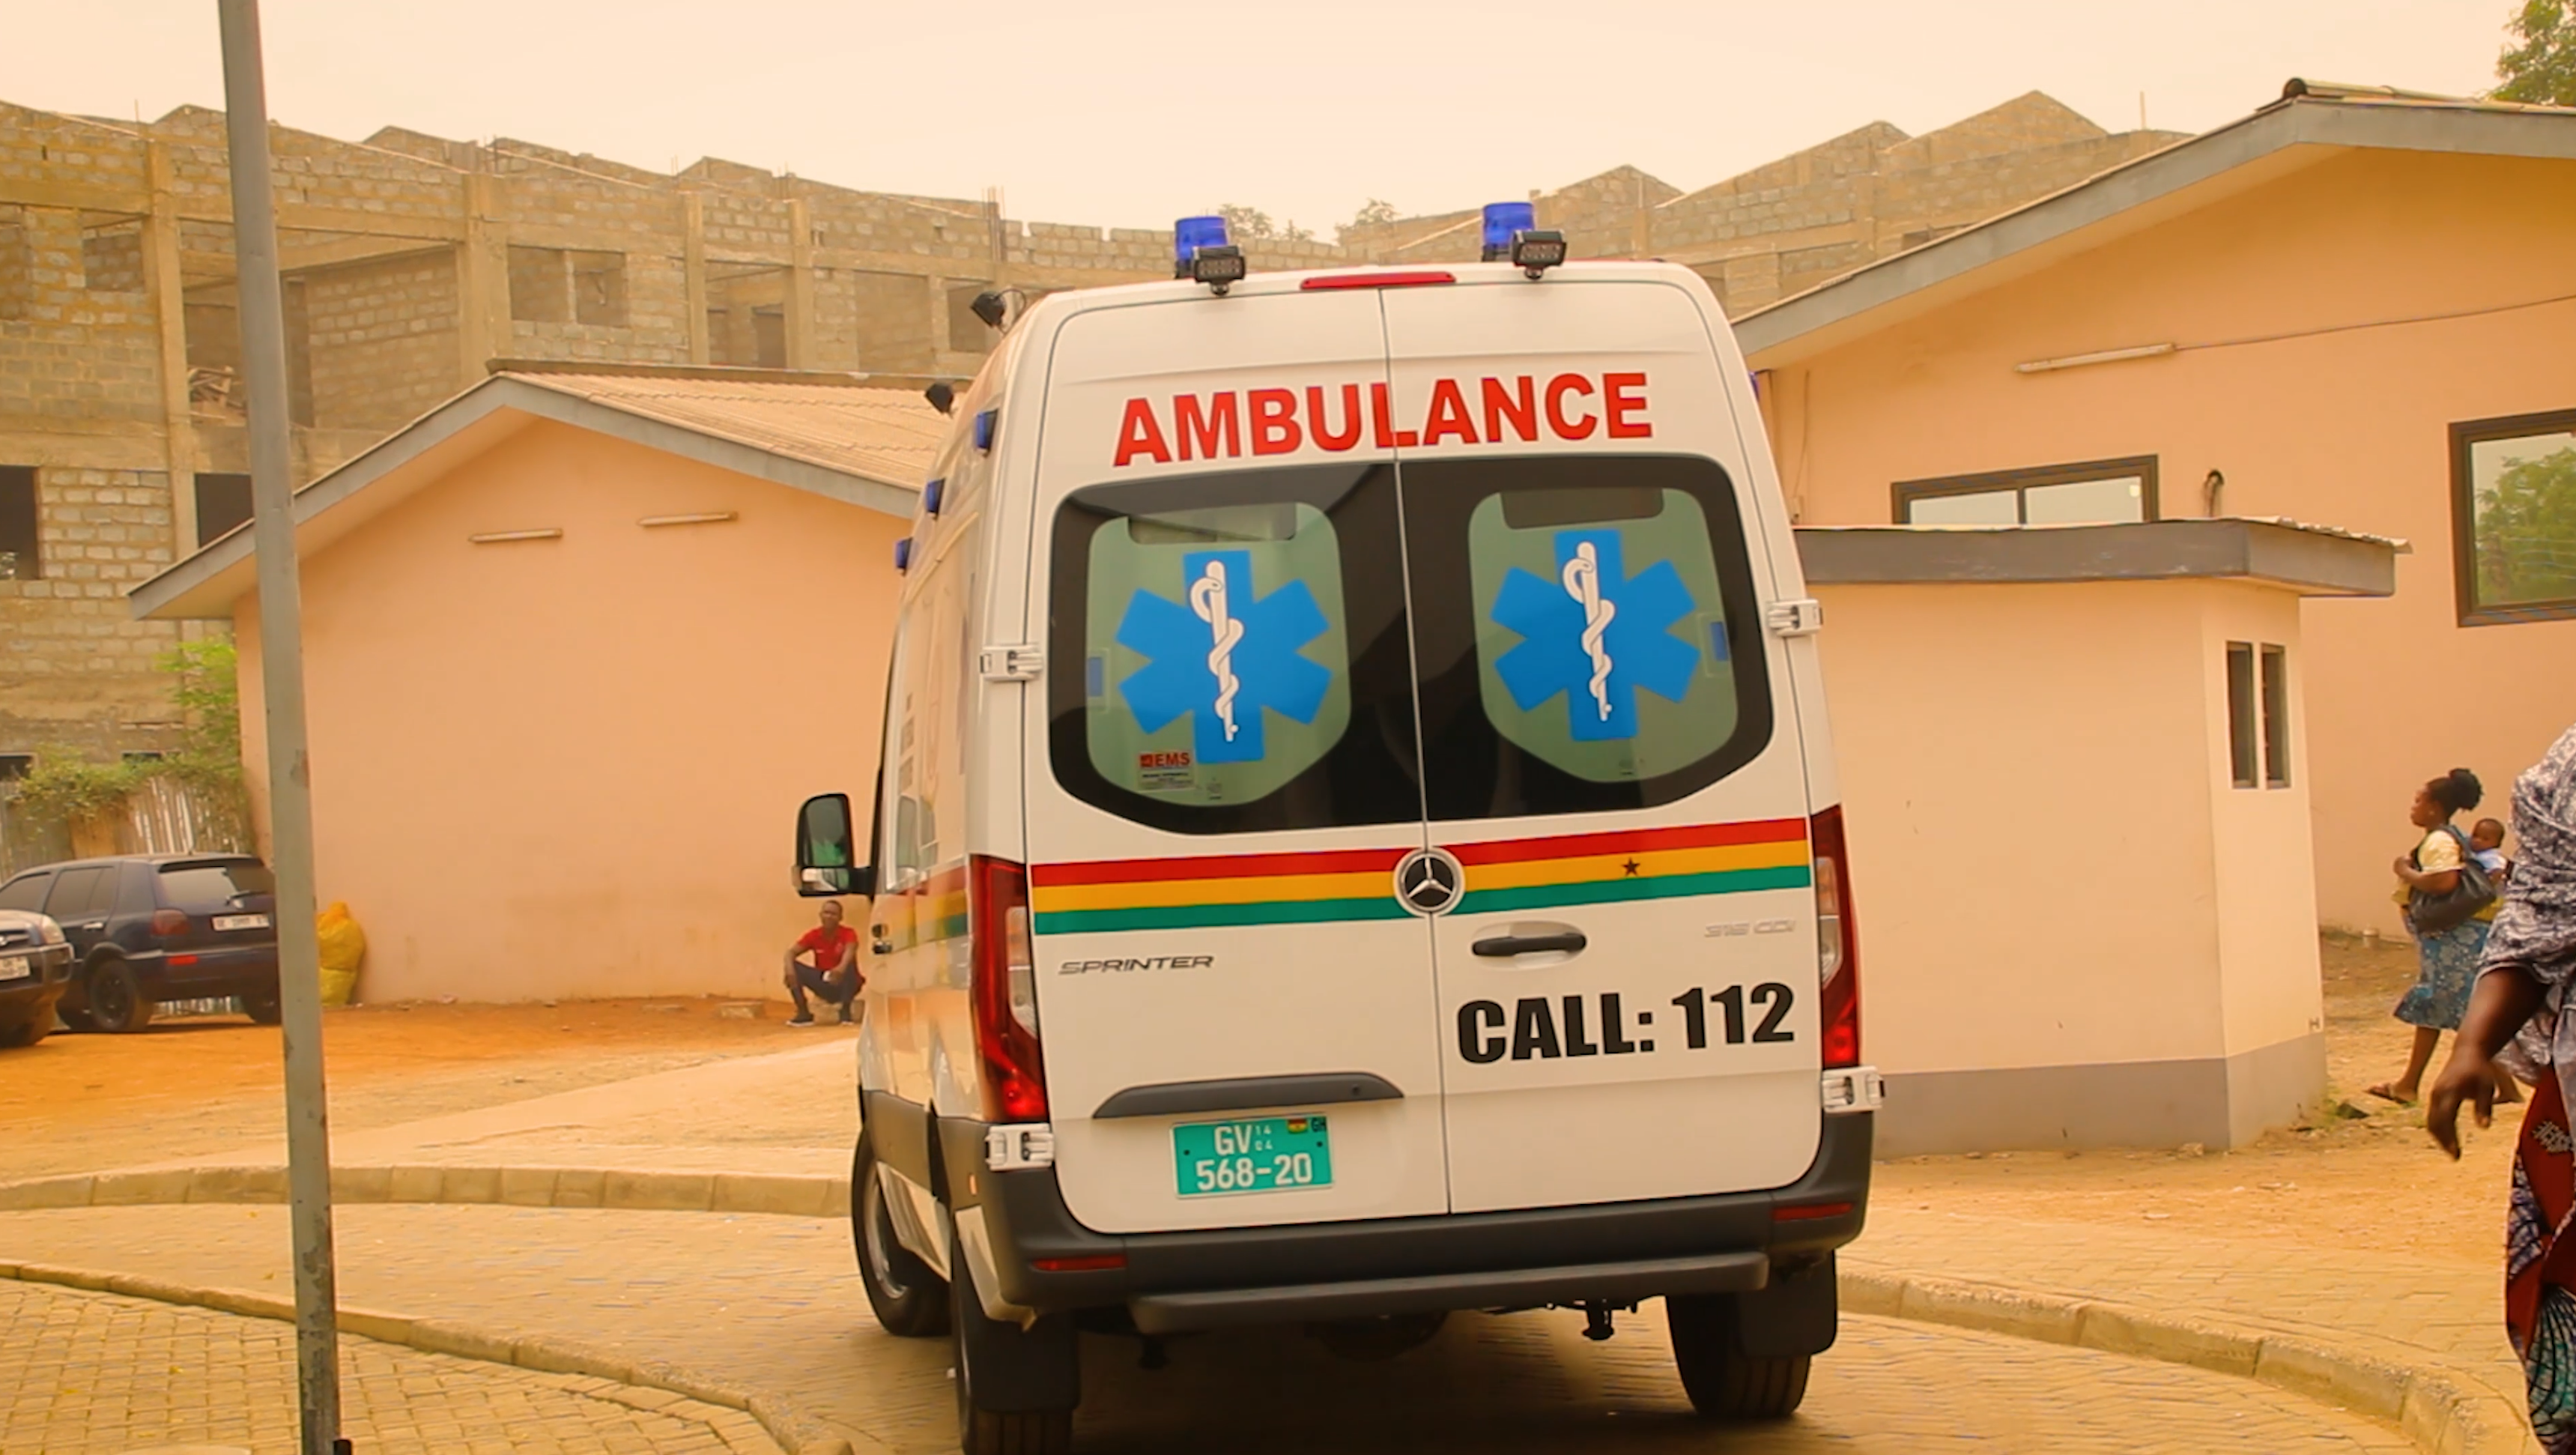 Ambulance in Tema municipality, Ghana